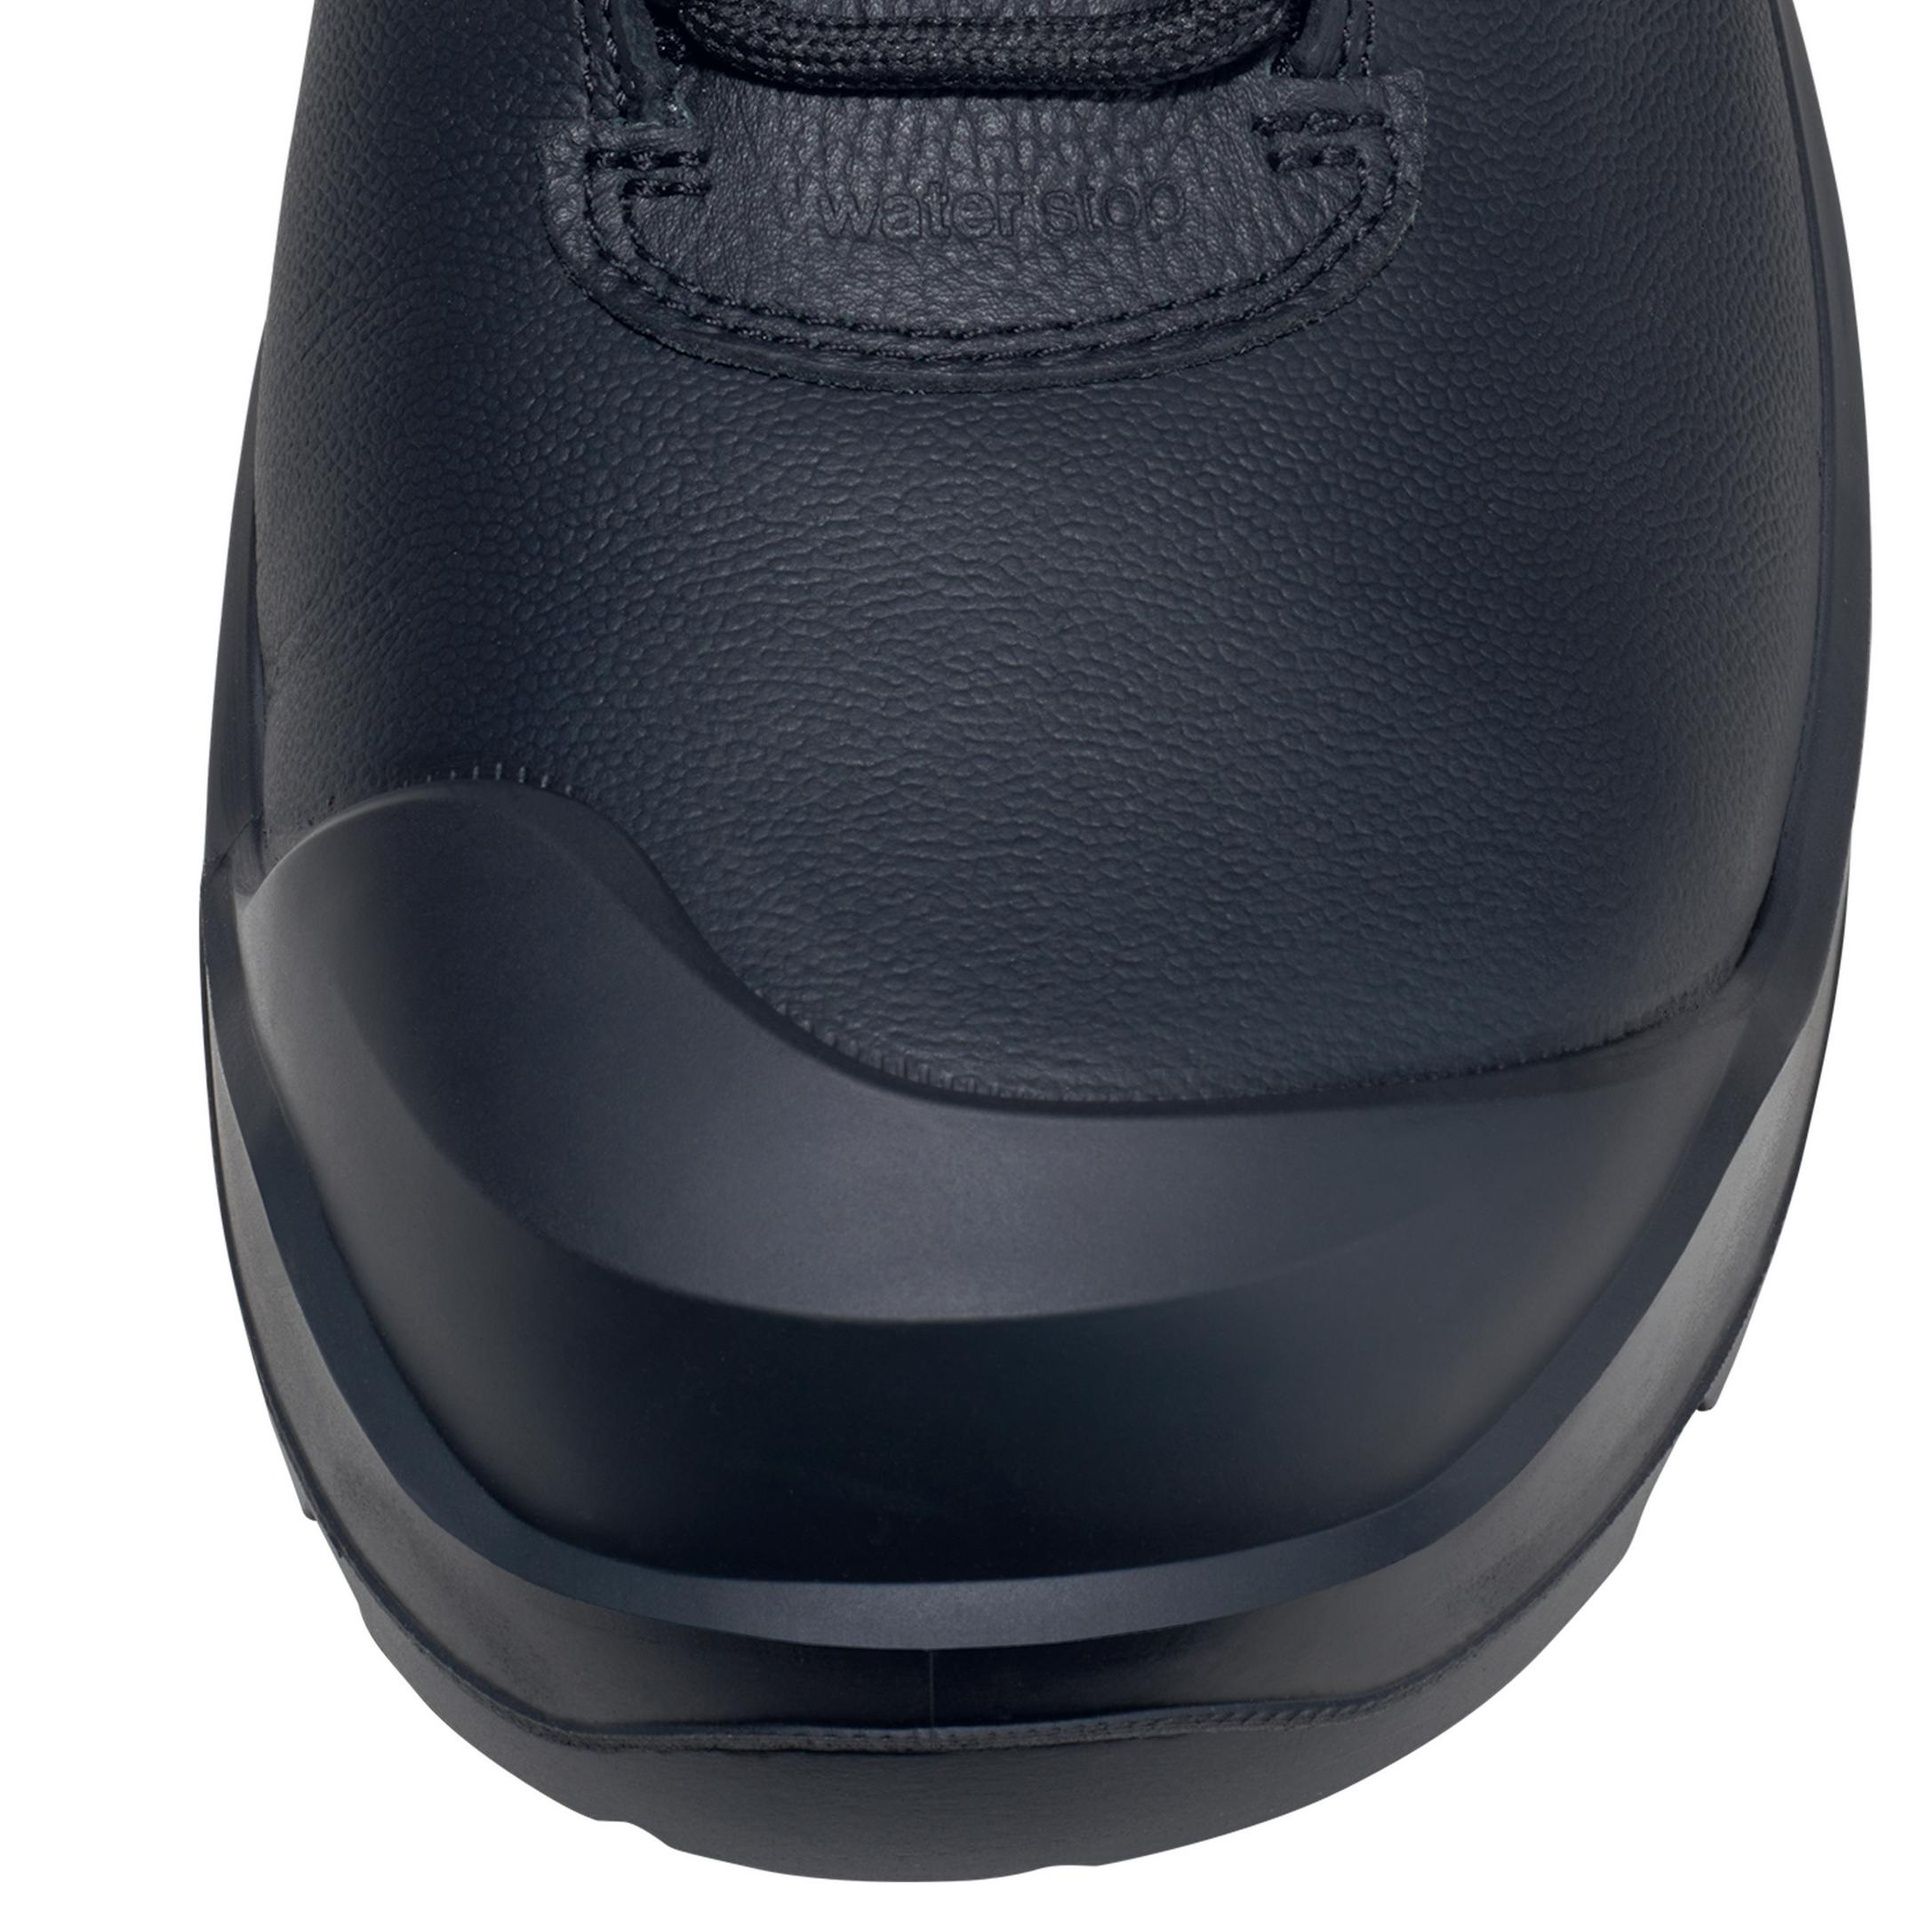 ochranná obuv nízka uvex 3 S3L black šírka 11